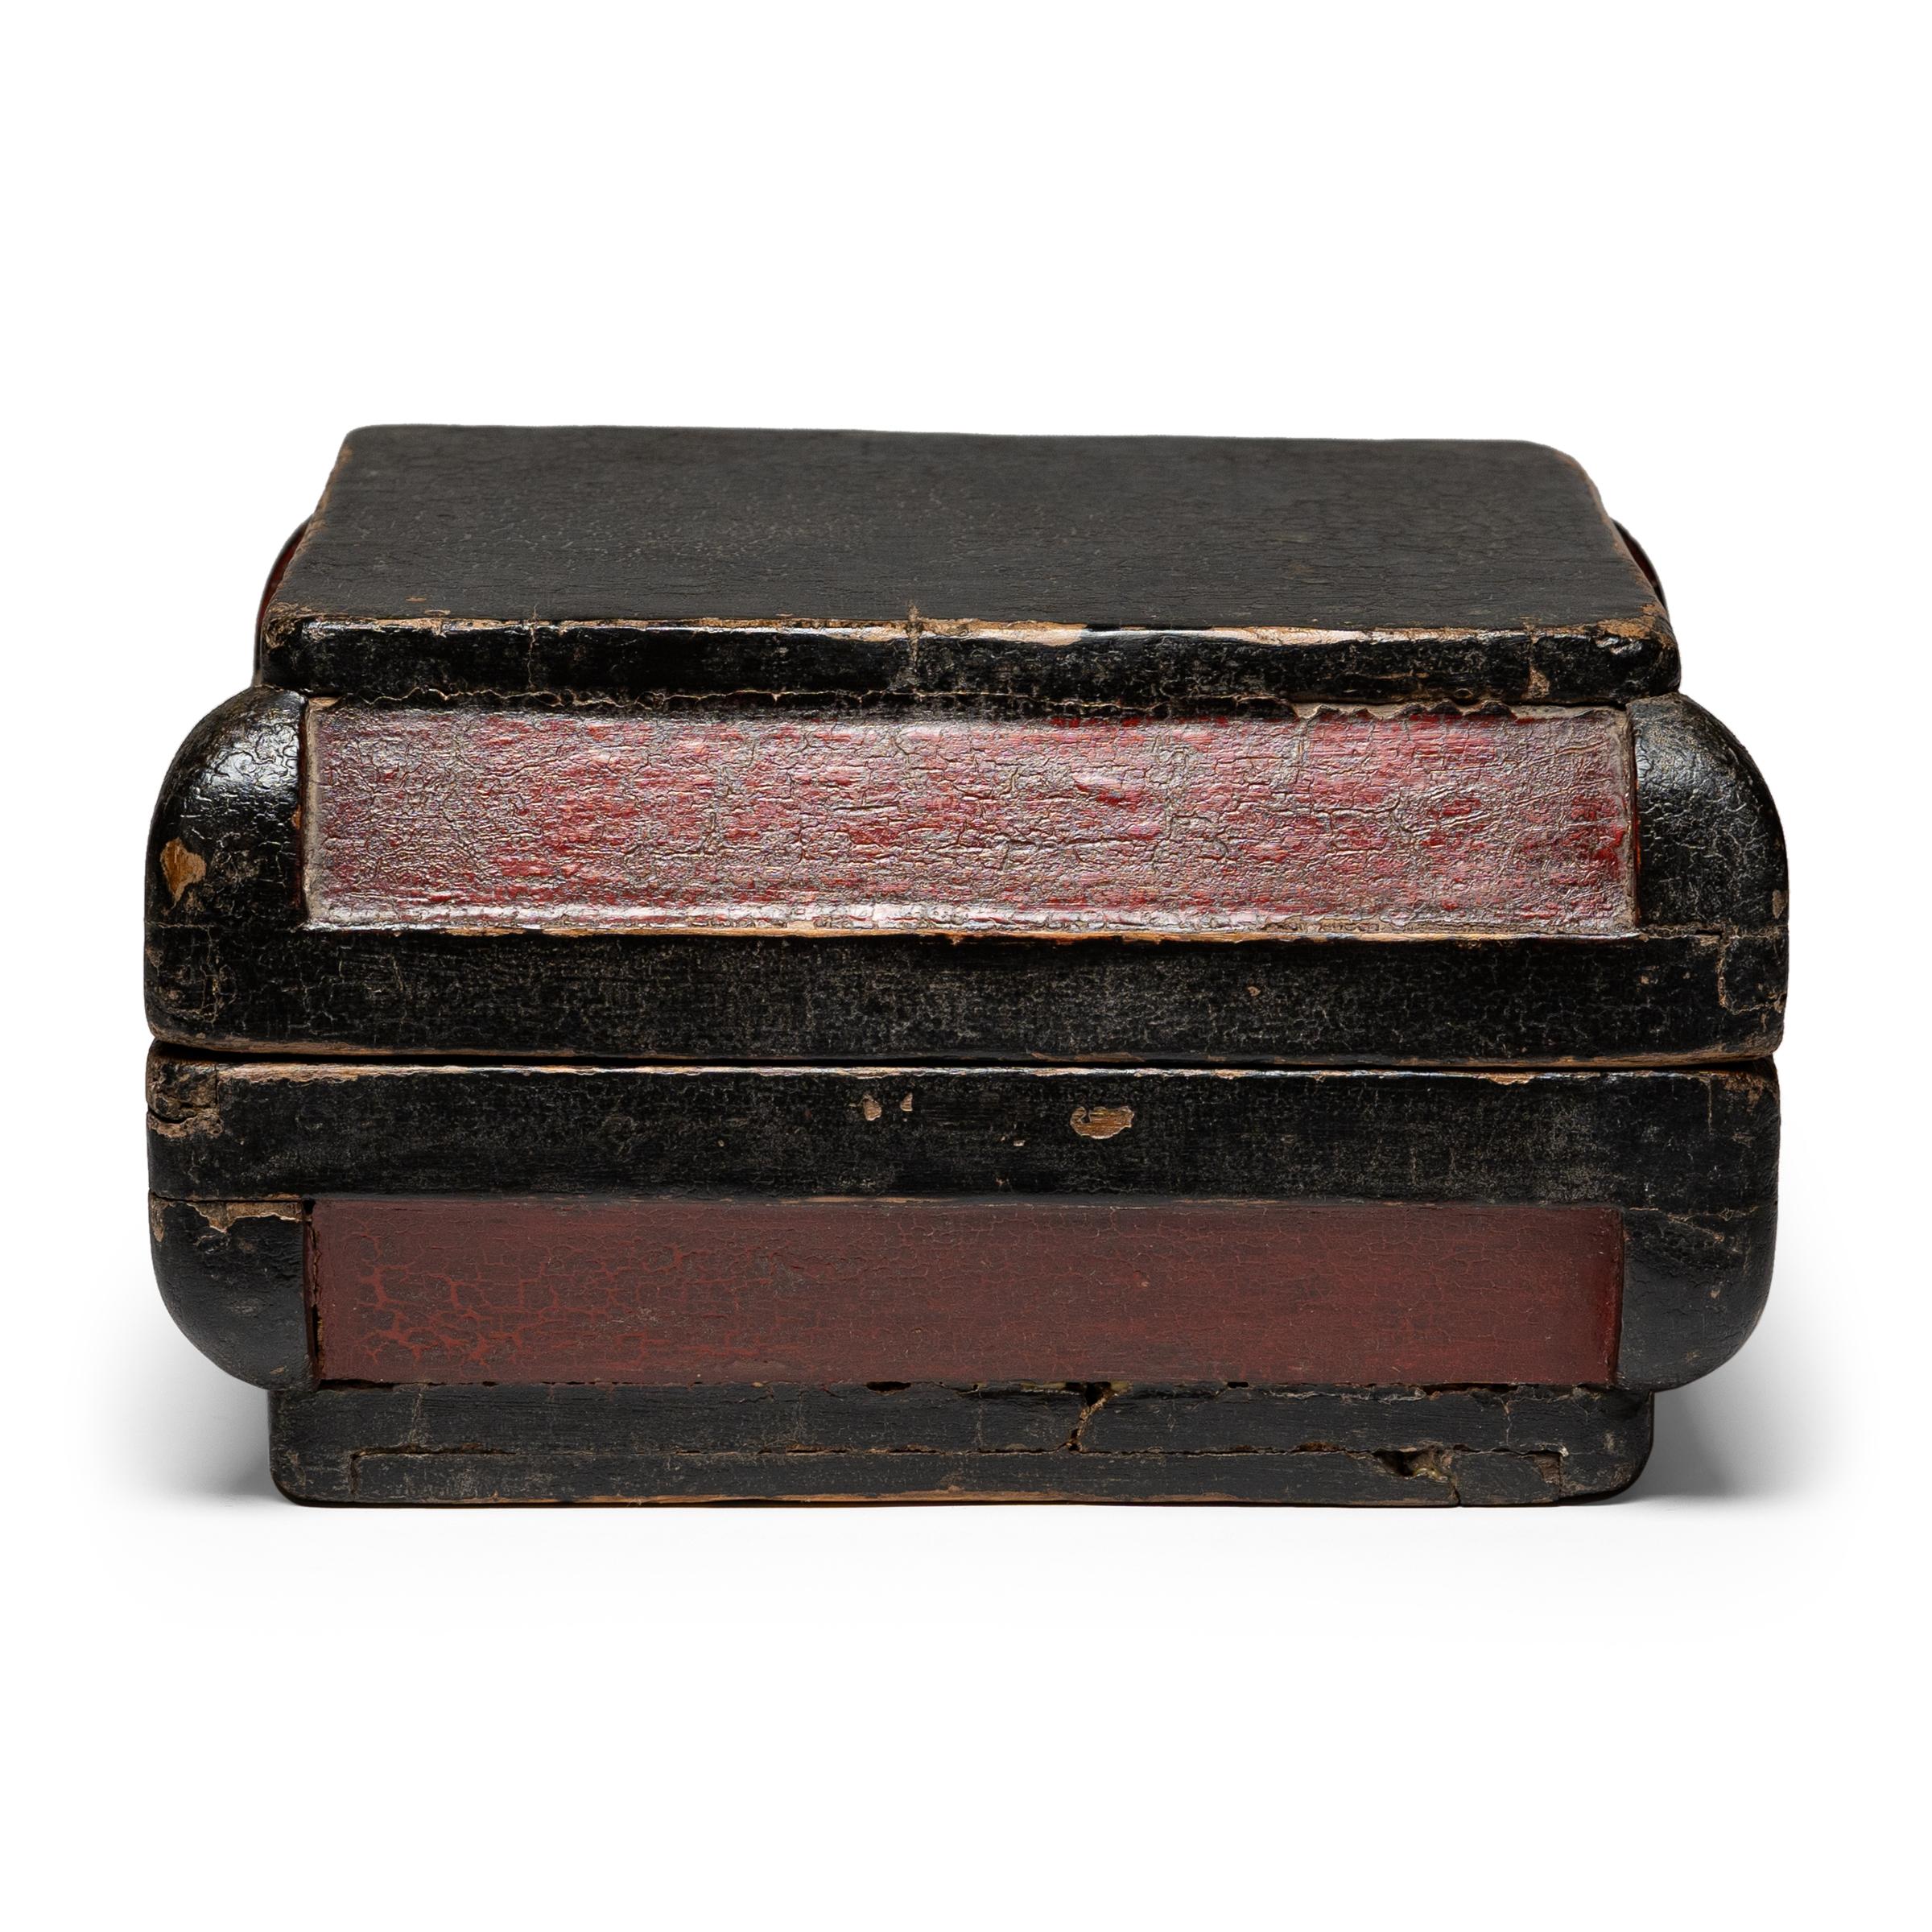 Dieser schlichte, lackierte Behälter wurde im 19. Jahrhundert als Snackbox verwendet und zu Feiertagen und besonderen Anlässen verschenkt. Zur Freude der Empfänger kam beim Öffnen der unscheinbaren Schachtel eine Fülle beliebter Snacks zum